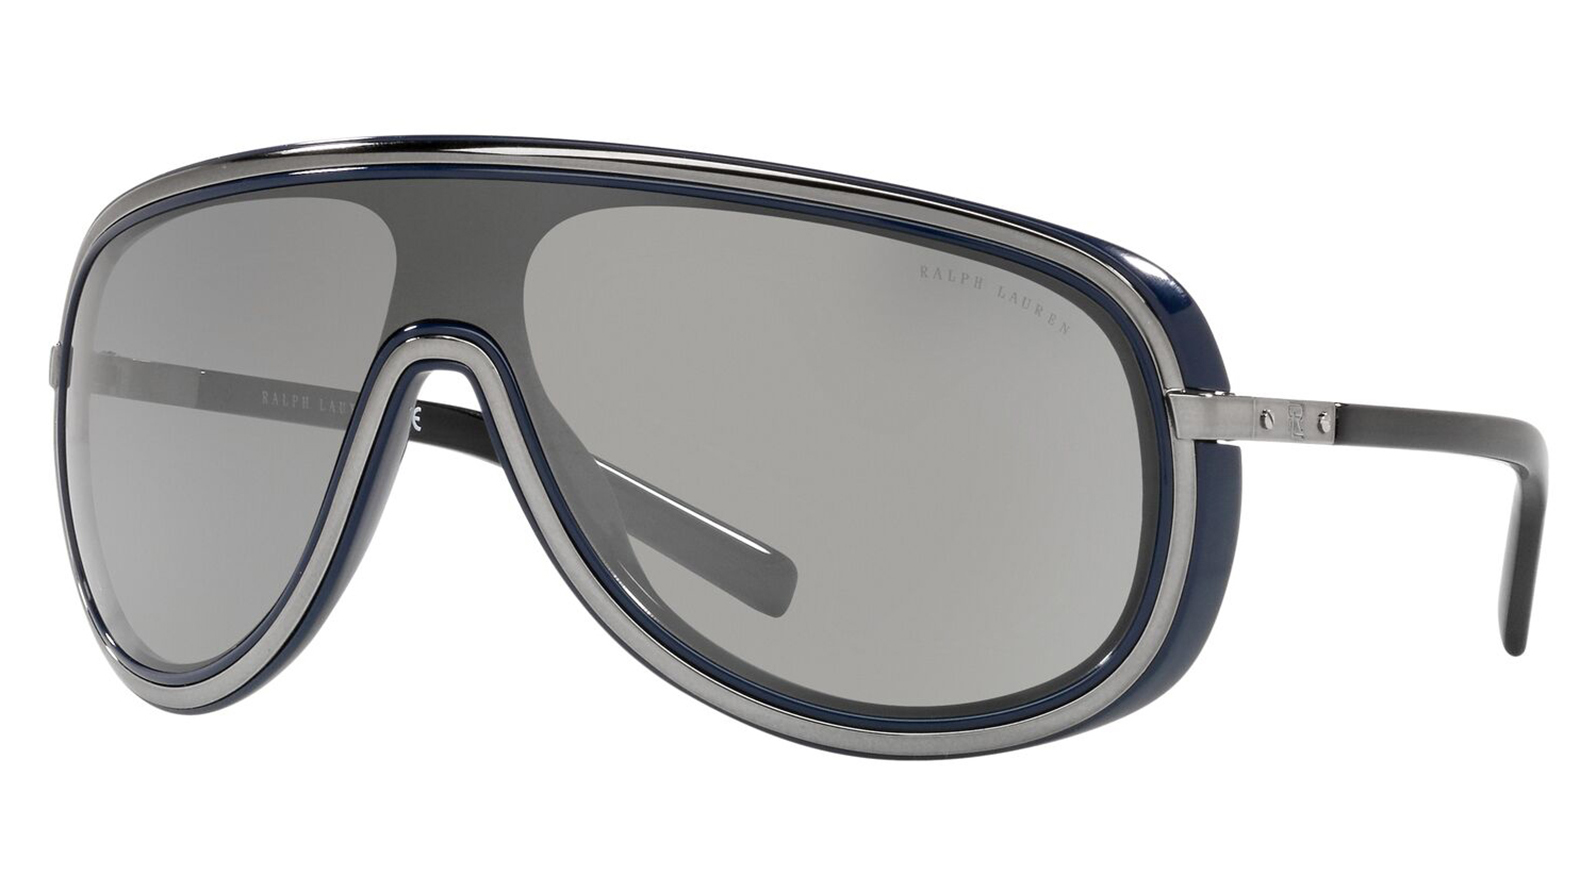 Ralph Lauren 7069 90026G поляризованные солнцезащитные очки мужчины открытый спортивный туризм рыбалка гольф управляя солнца очки uv400 солнцезащитные очки